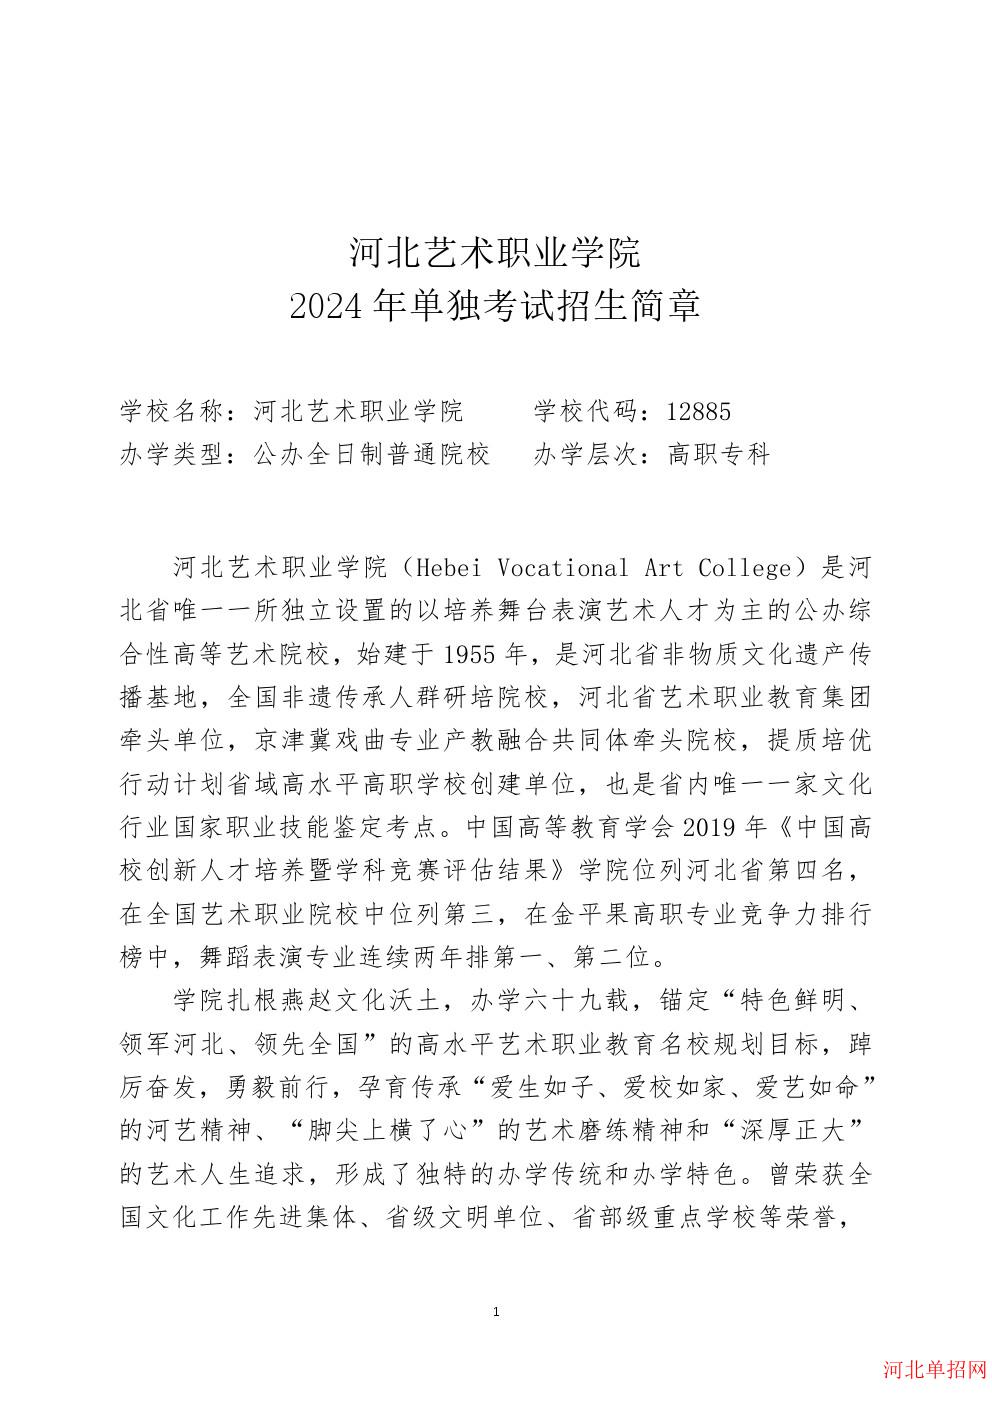 河北艺术职业学院2024年单招招生简章 图1